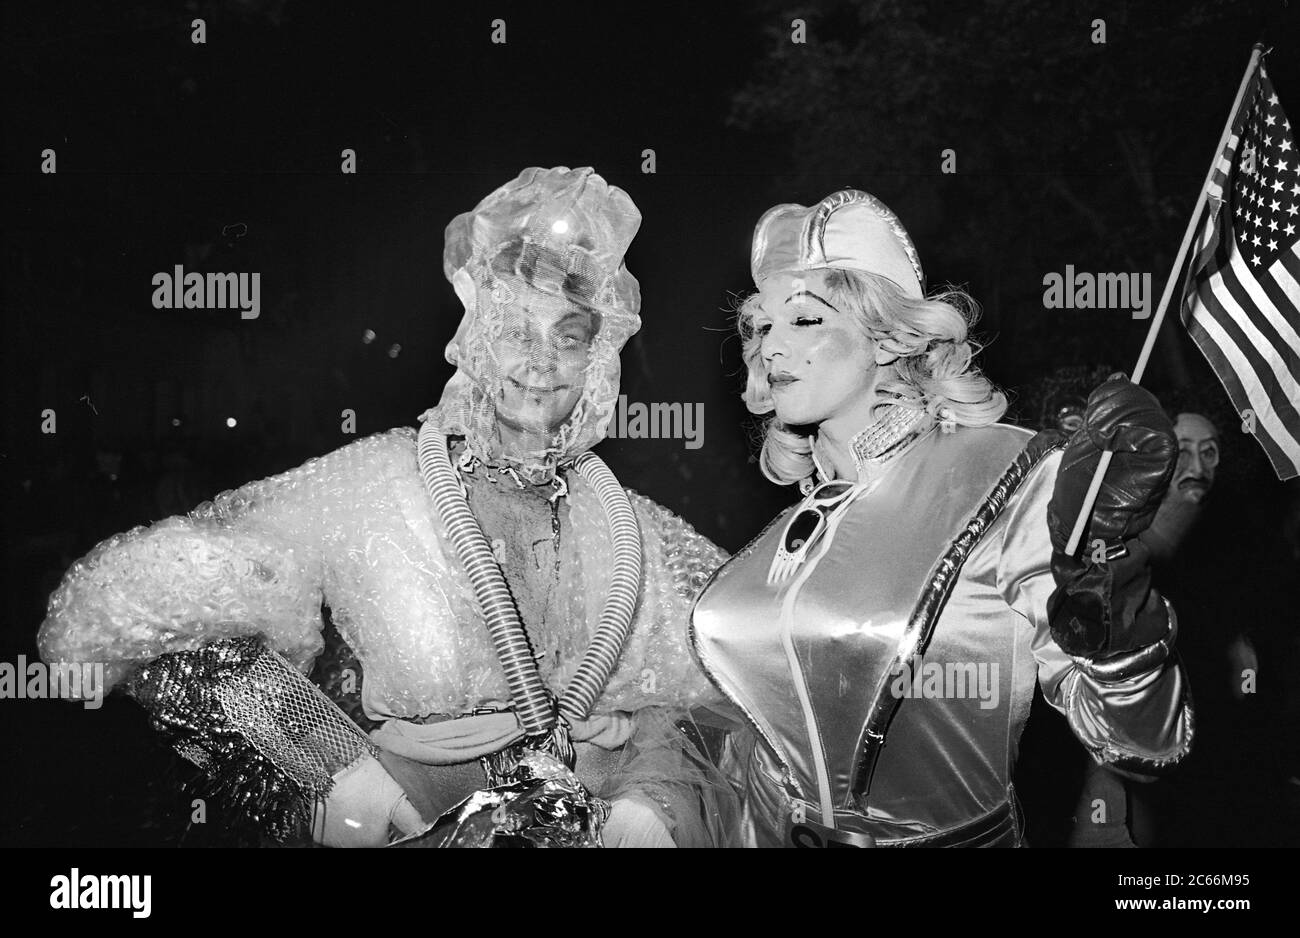 Costumi creativi alla Greenwich Village Halloween Parade, New York City, USA negli anni '80 fotografati con film in bianco e nero di notte. Foto Stock